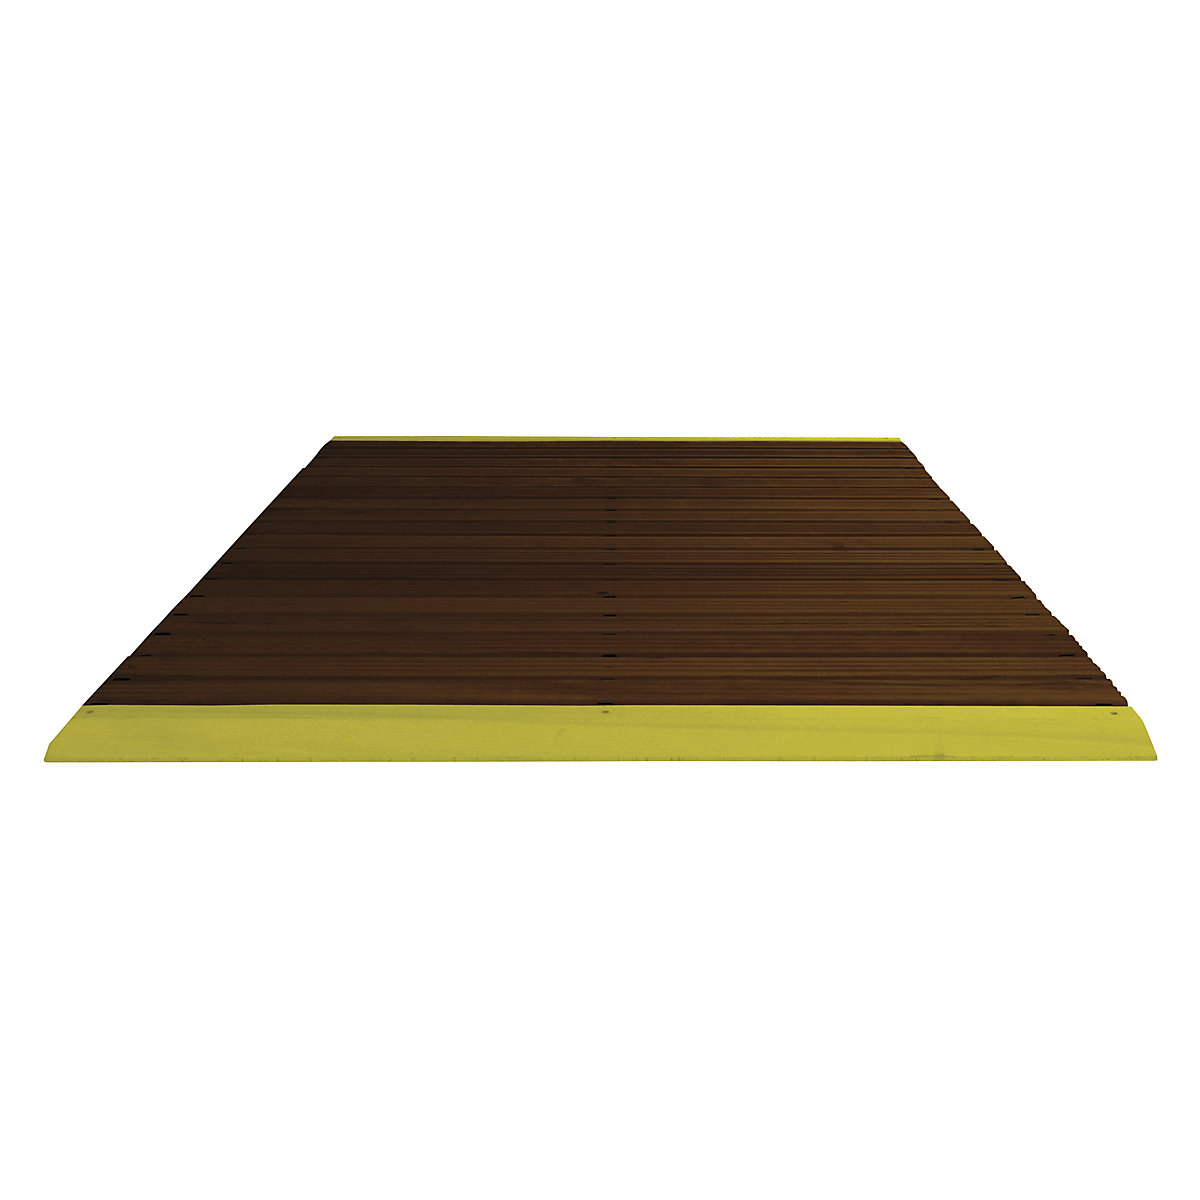 Holzlaufrost dunkel gebeizt, pro lfd. m, mit Anschrägung, inkl. gelber Auffahrkanten, Breite 1500 mm-4